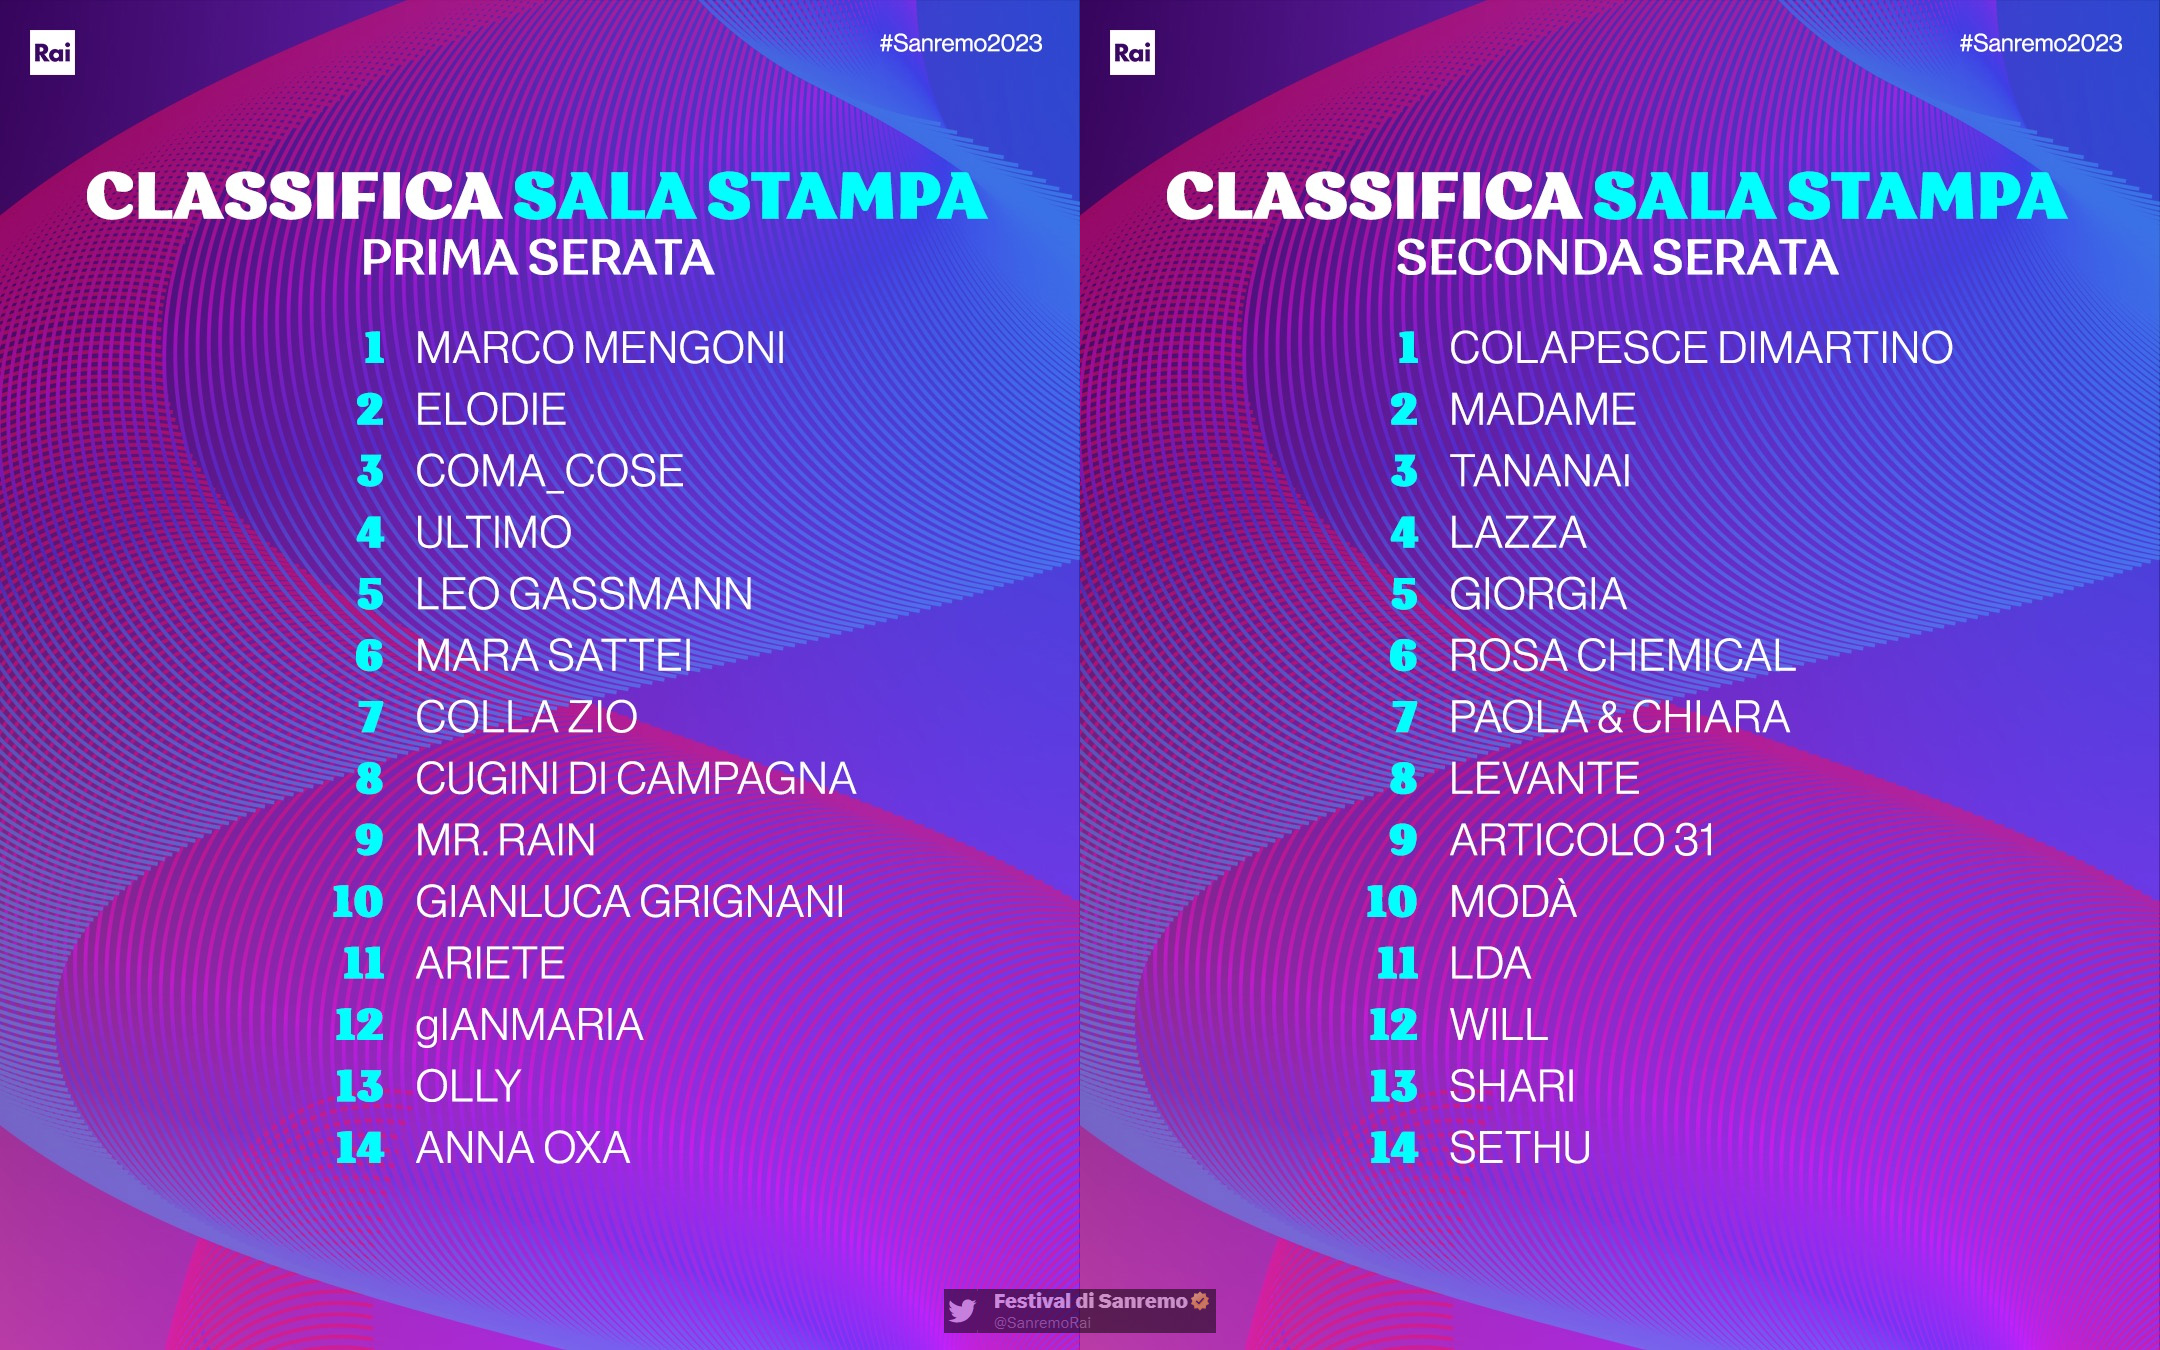 Le classifiche delle prime due serate di Sanremo 2023